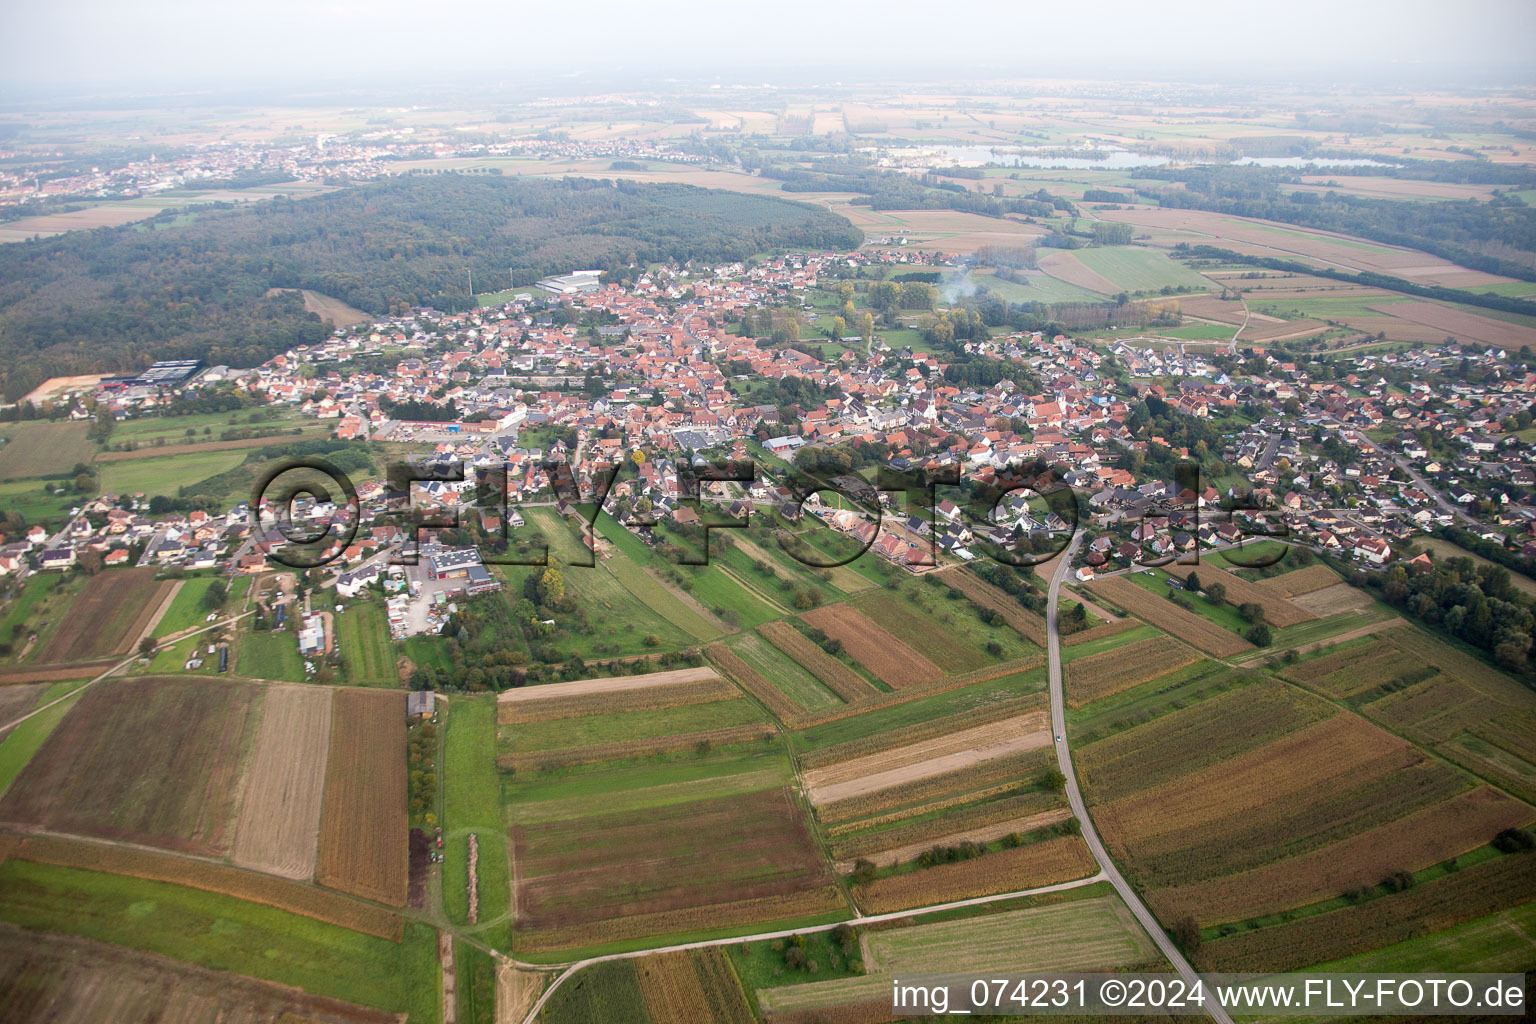 Vue aérienne de Champs agricoles et surfaces utilisables à Gries dans le département Bas Rhin, France